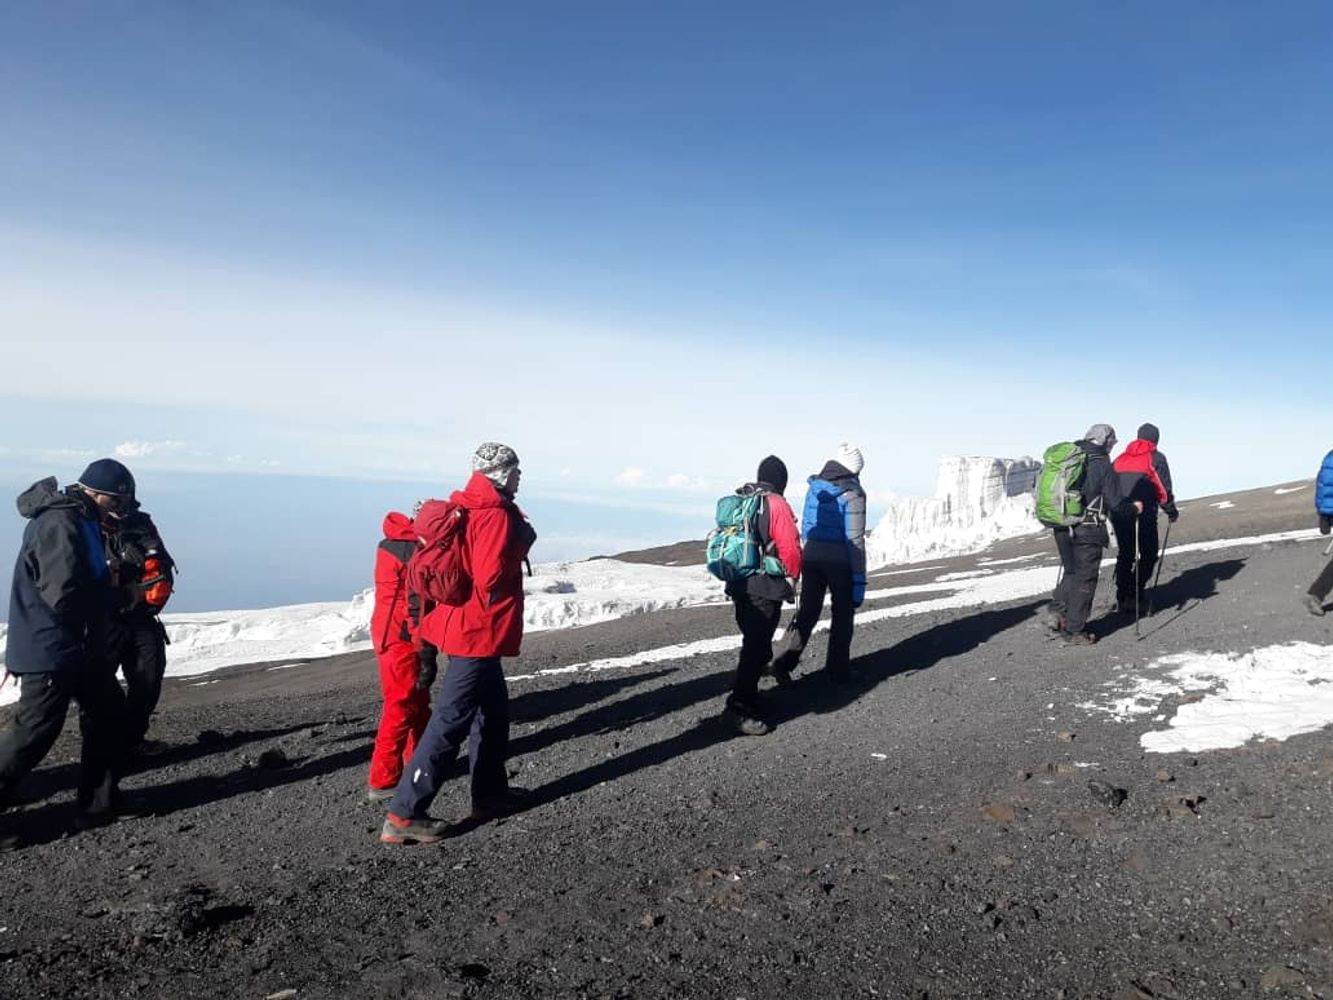 Kilimanjaro 7 days Machame route